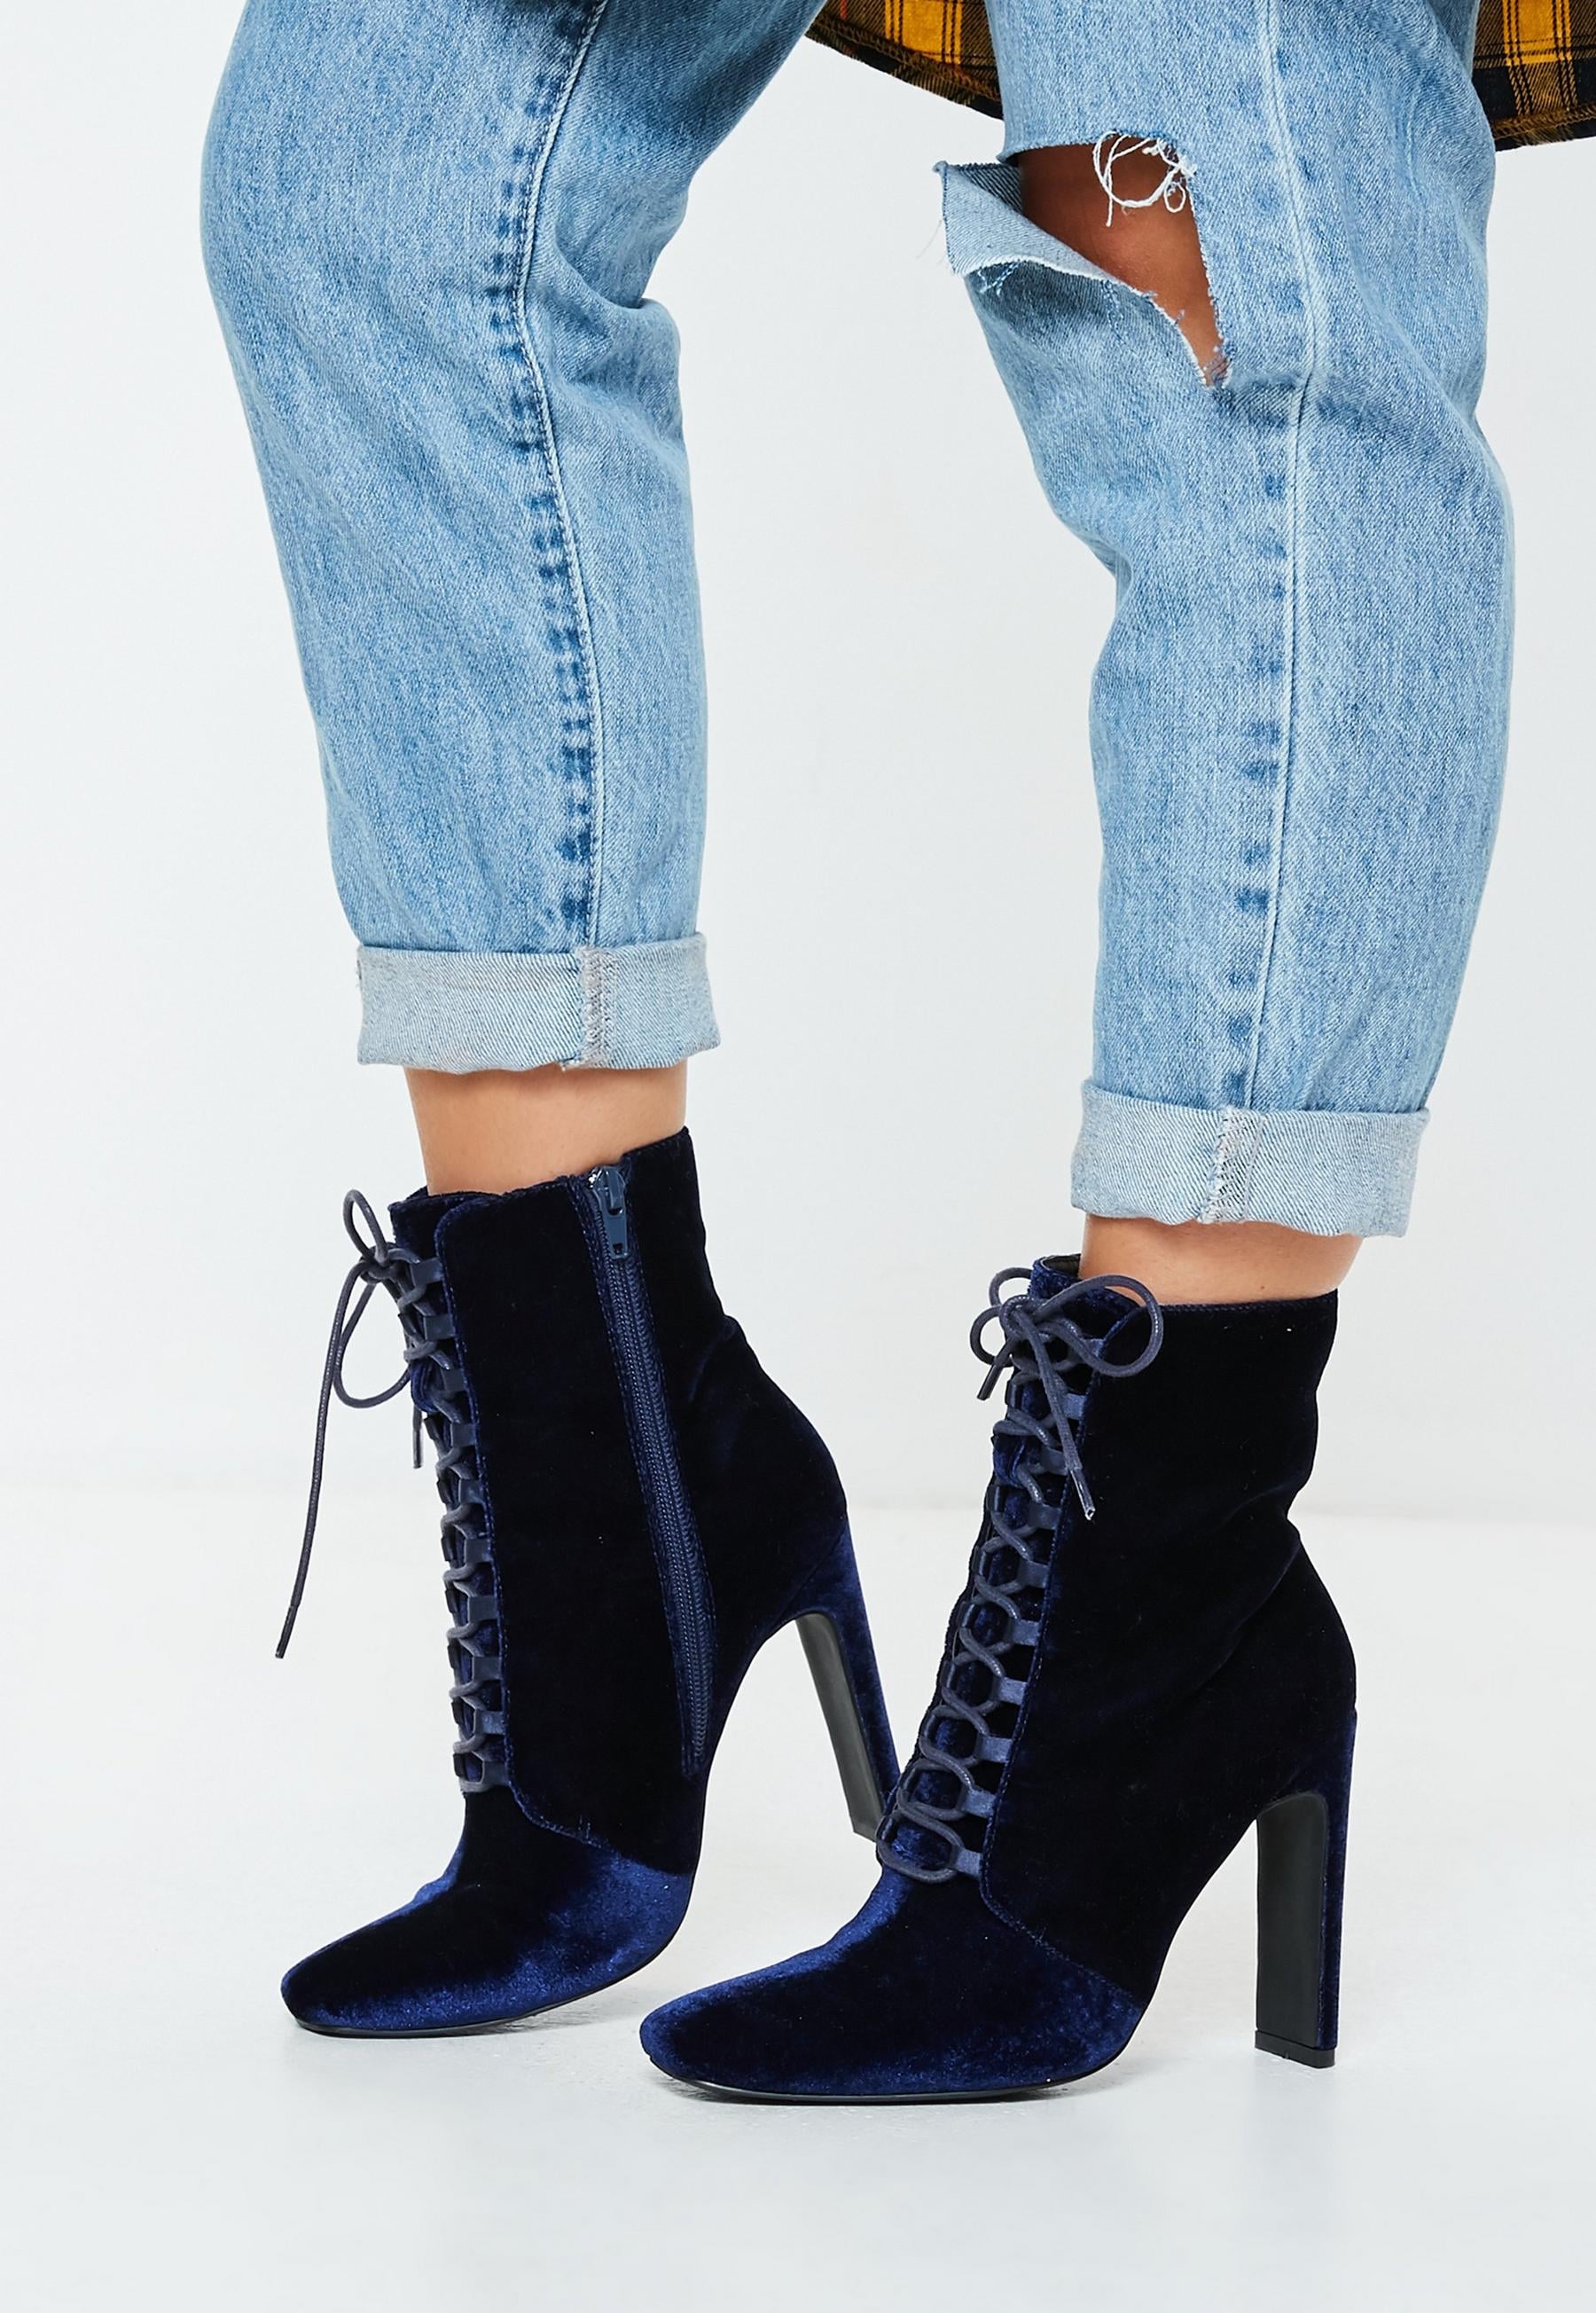 versace 9s heels